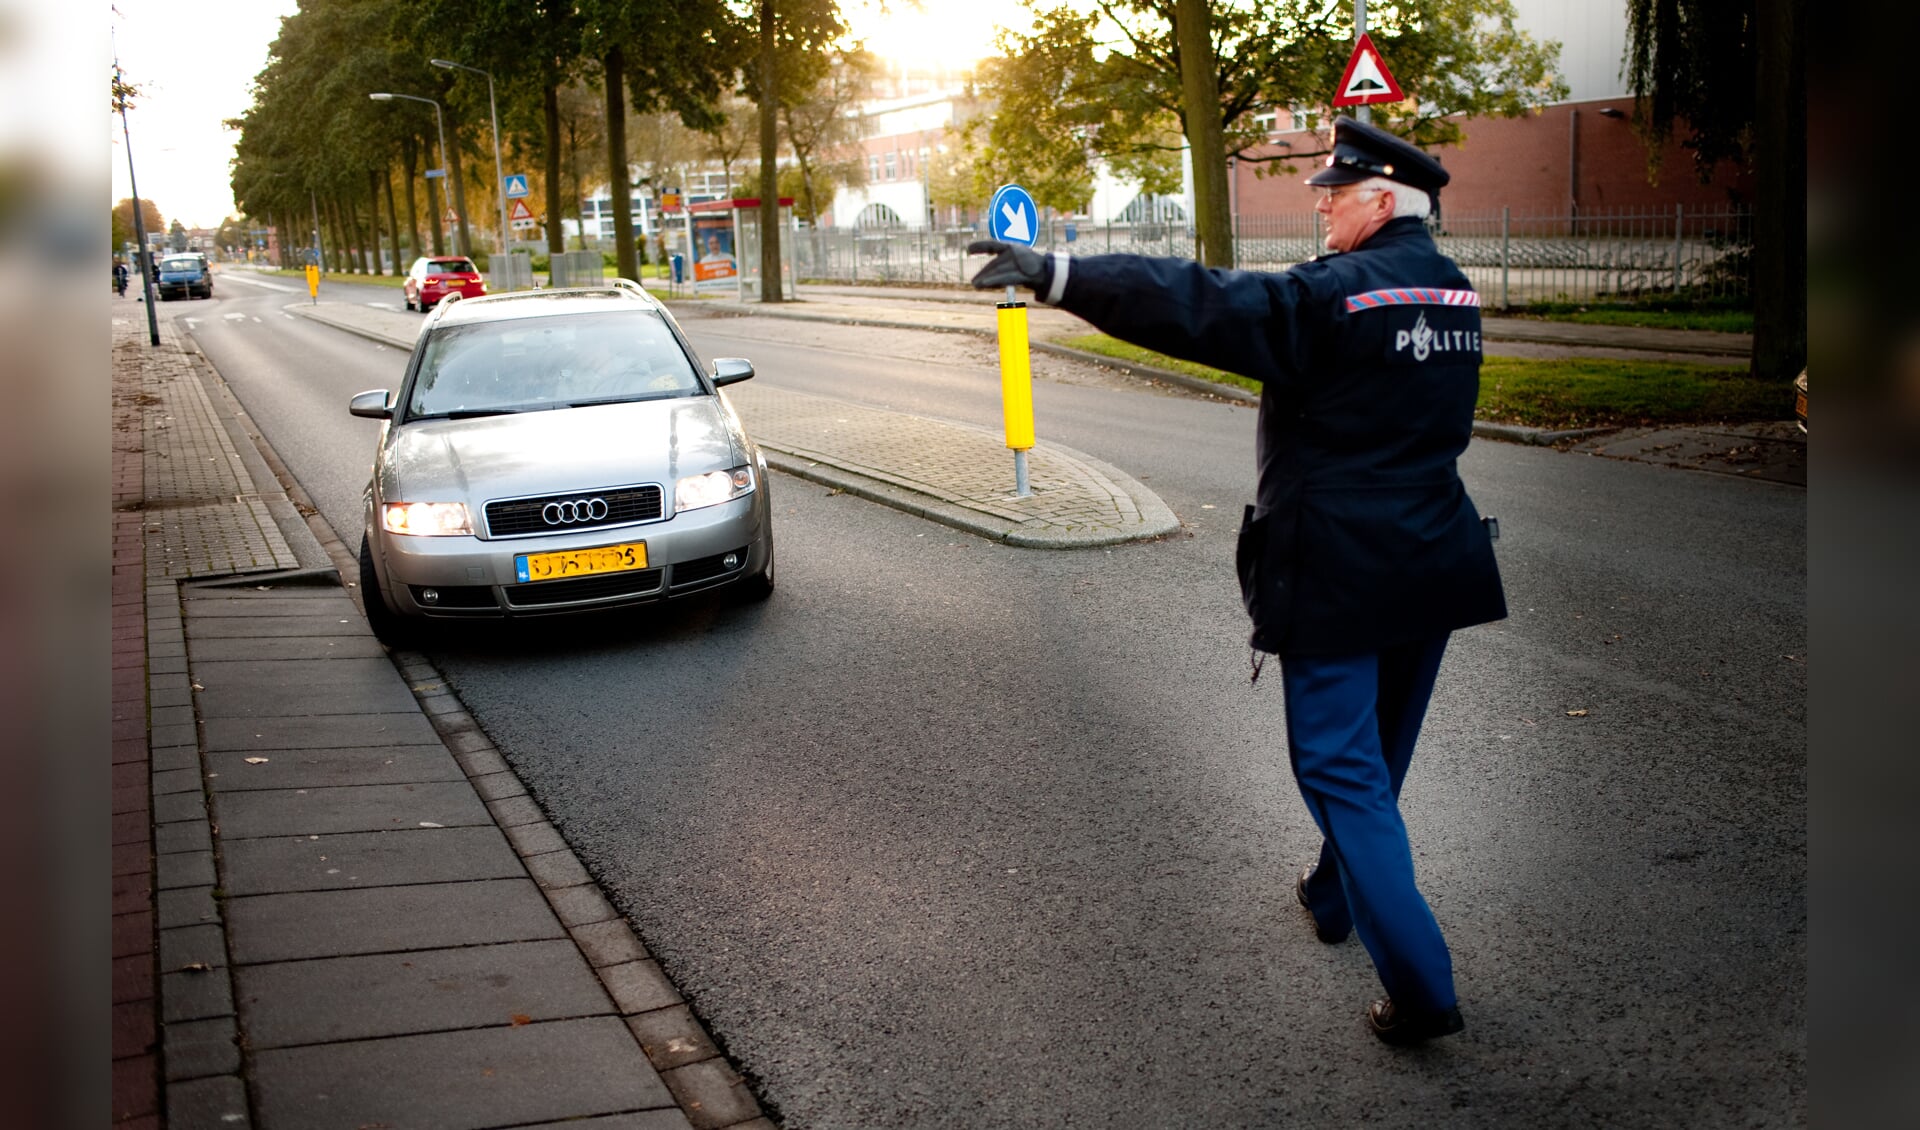 De politie controleert vaker onverwachts (archieffoto)